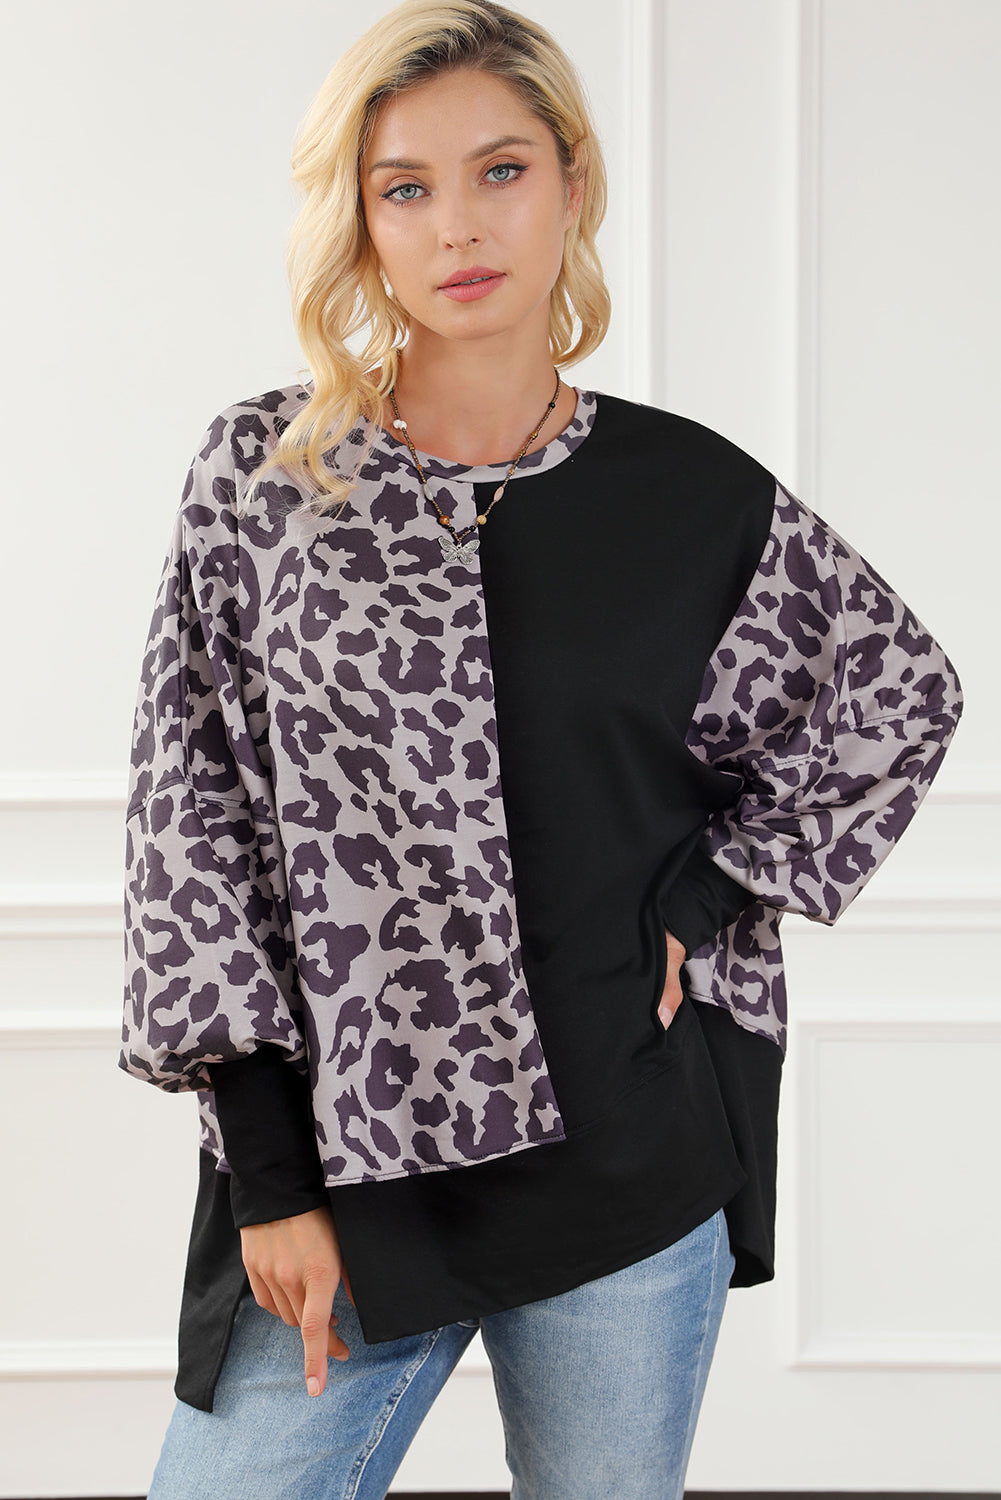 Crni sweatshirt s prorezima s rukavima u stilu patchworka s leopardom